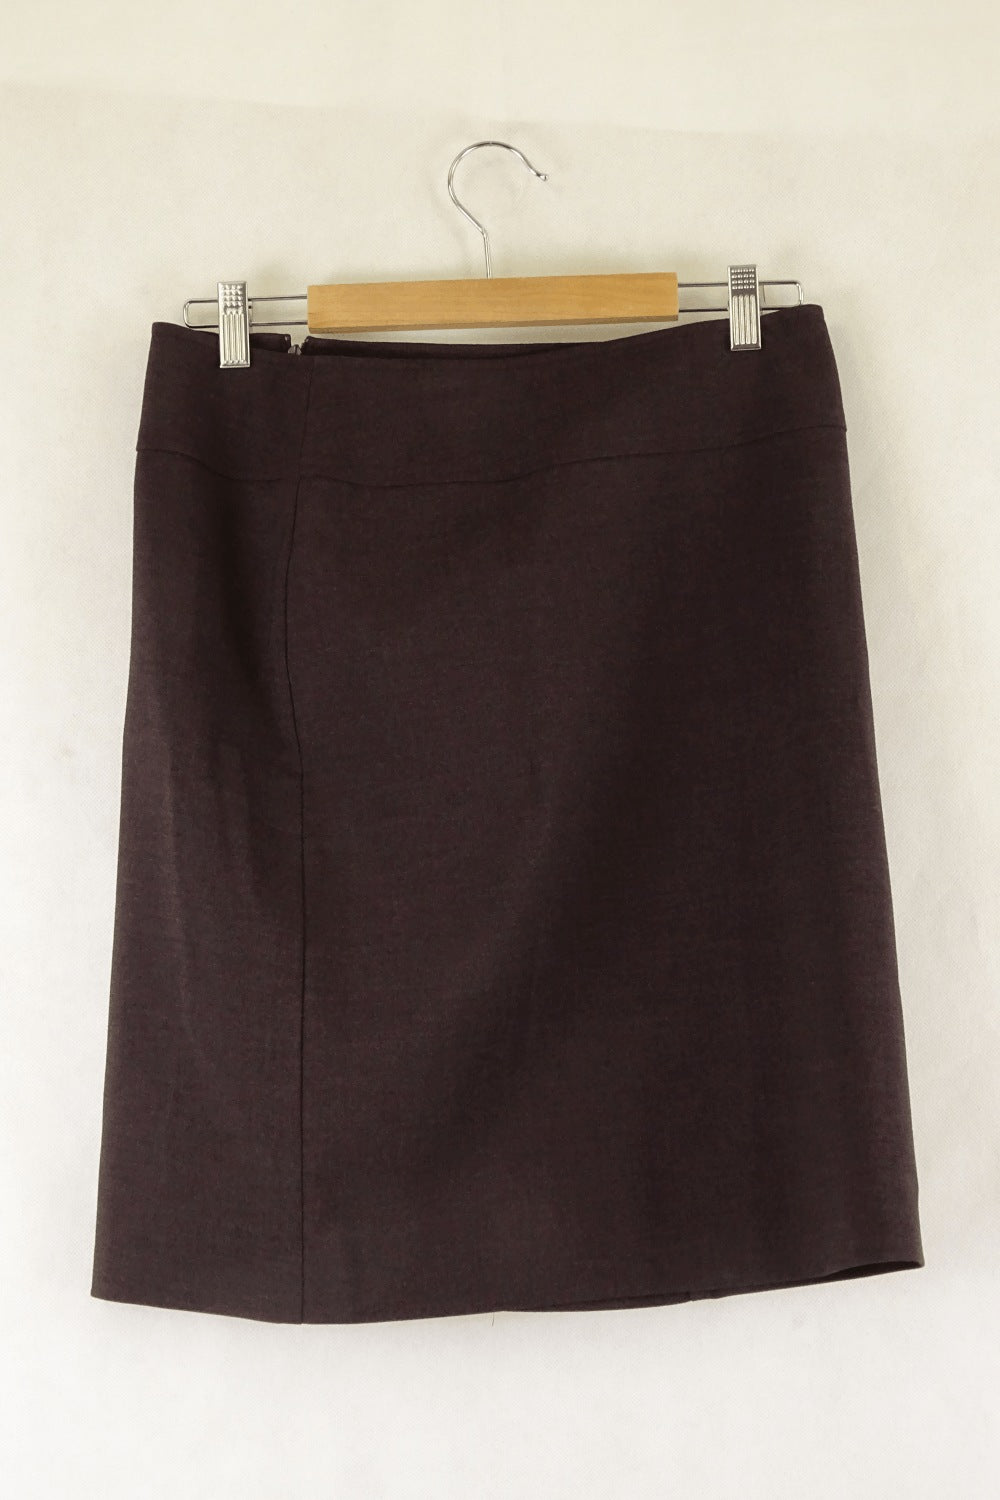 Cue Brown Skirt 10